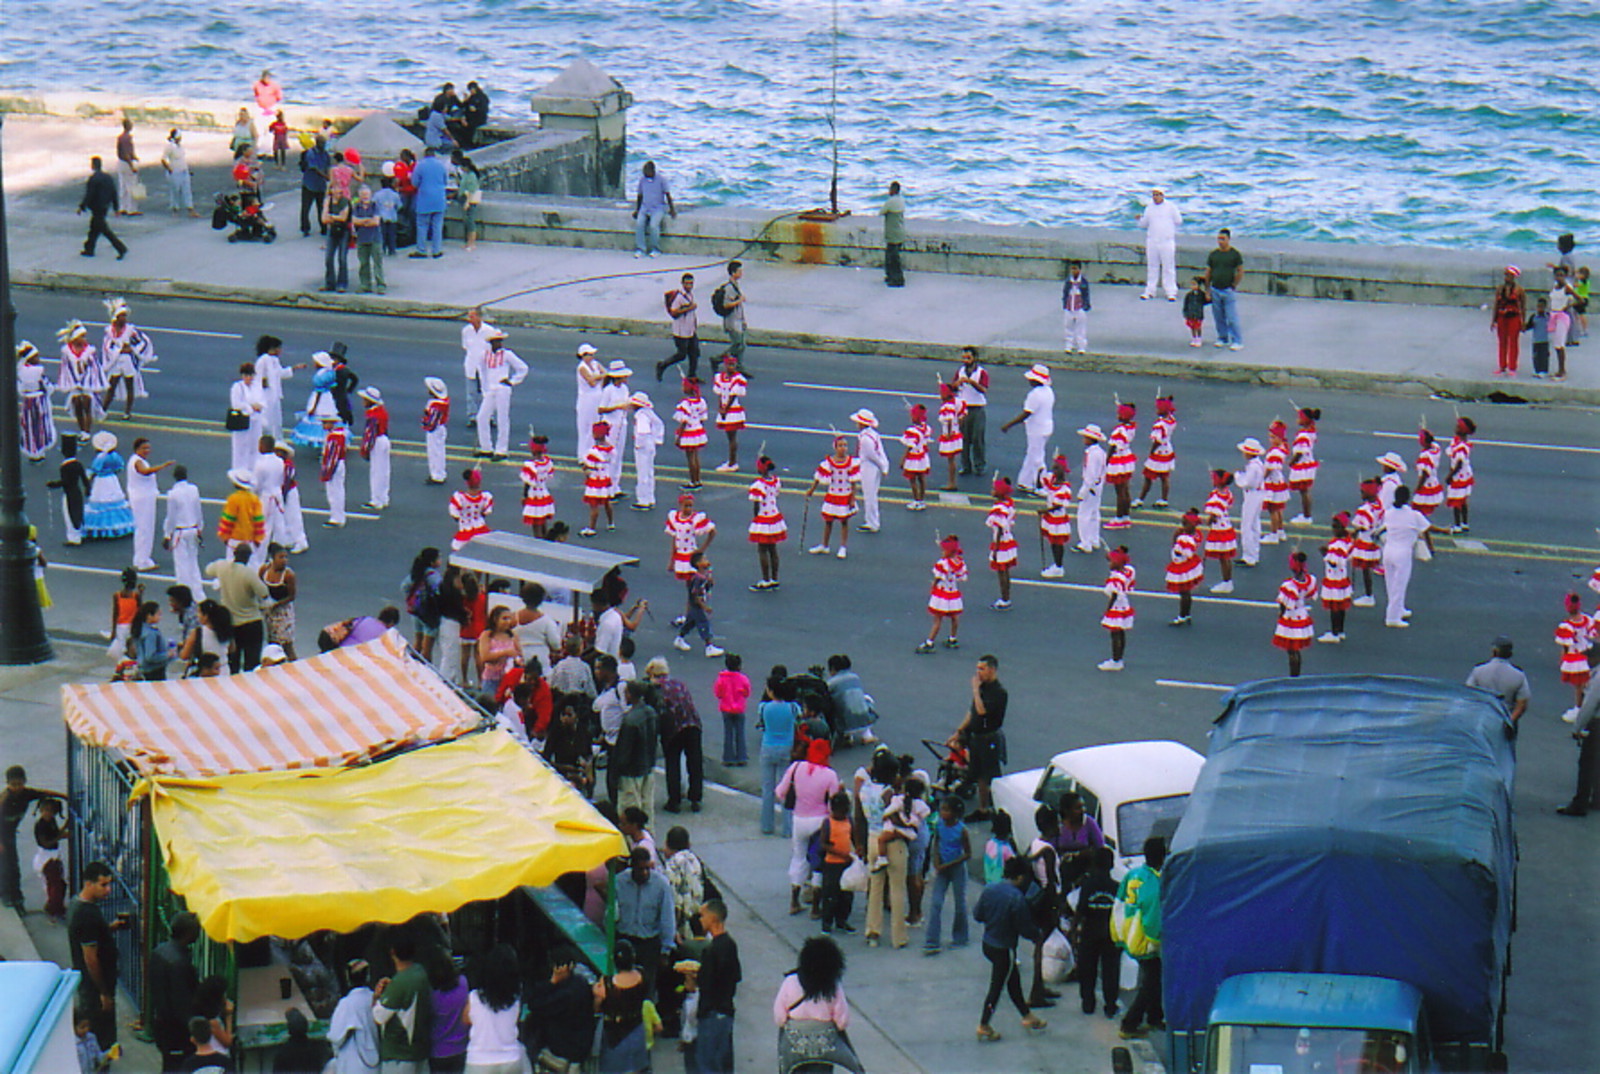 Children parading in a carnival, Havana